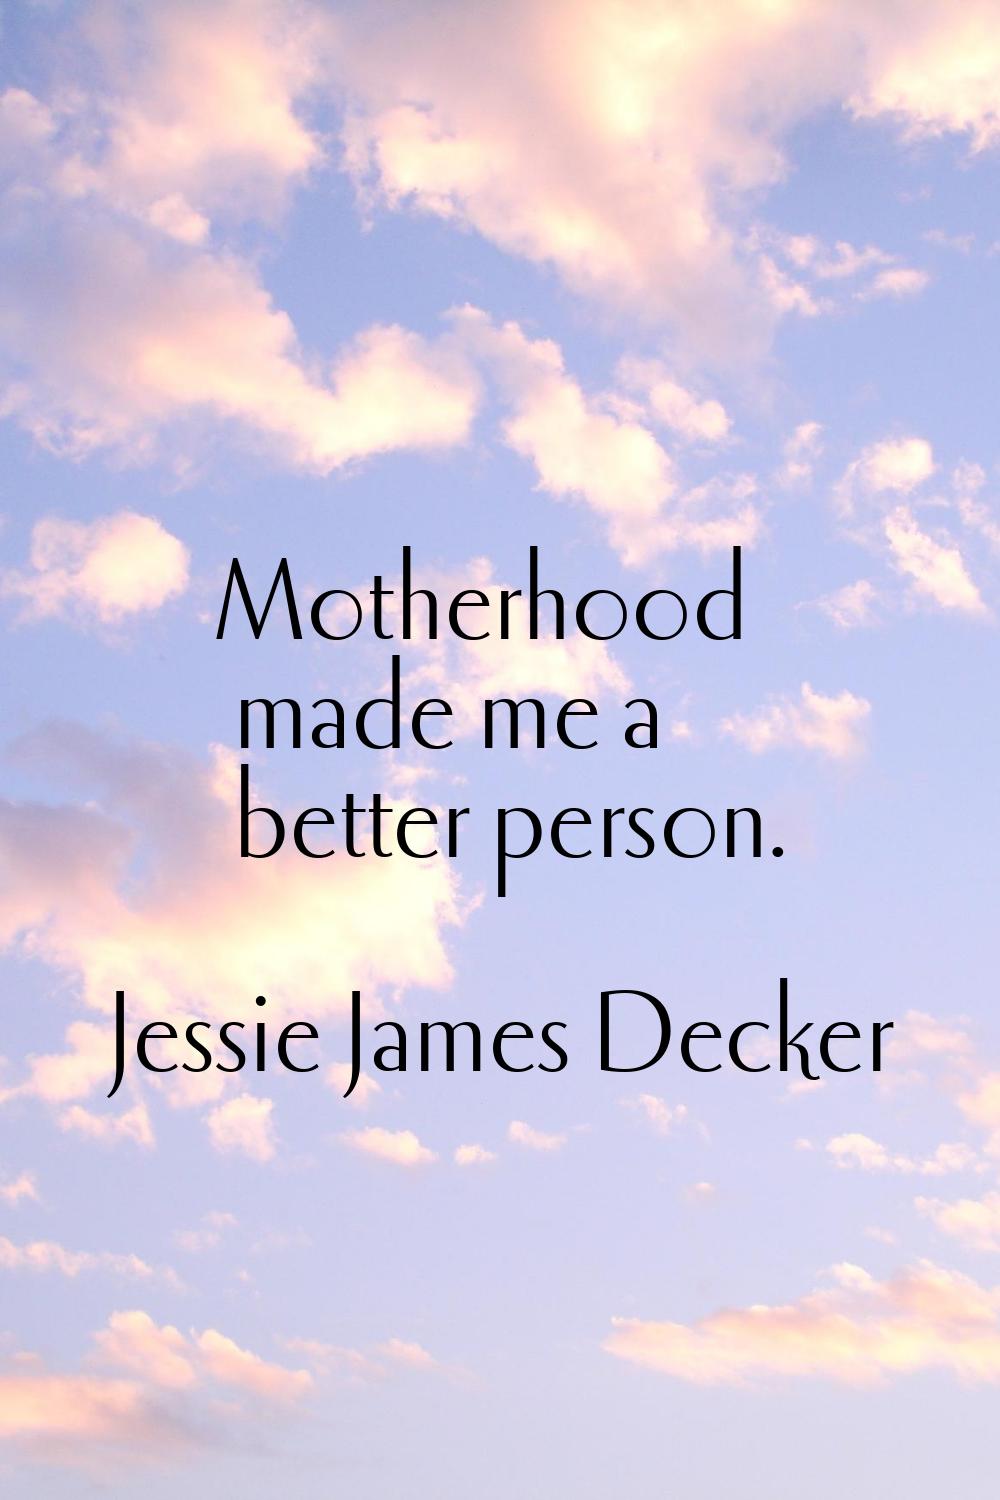 Motherhood made me a better person.